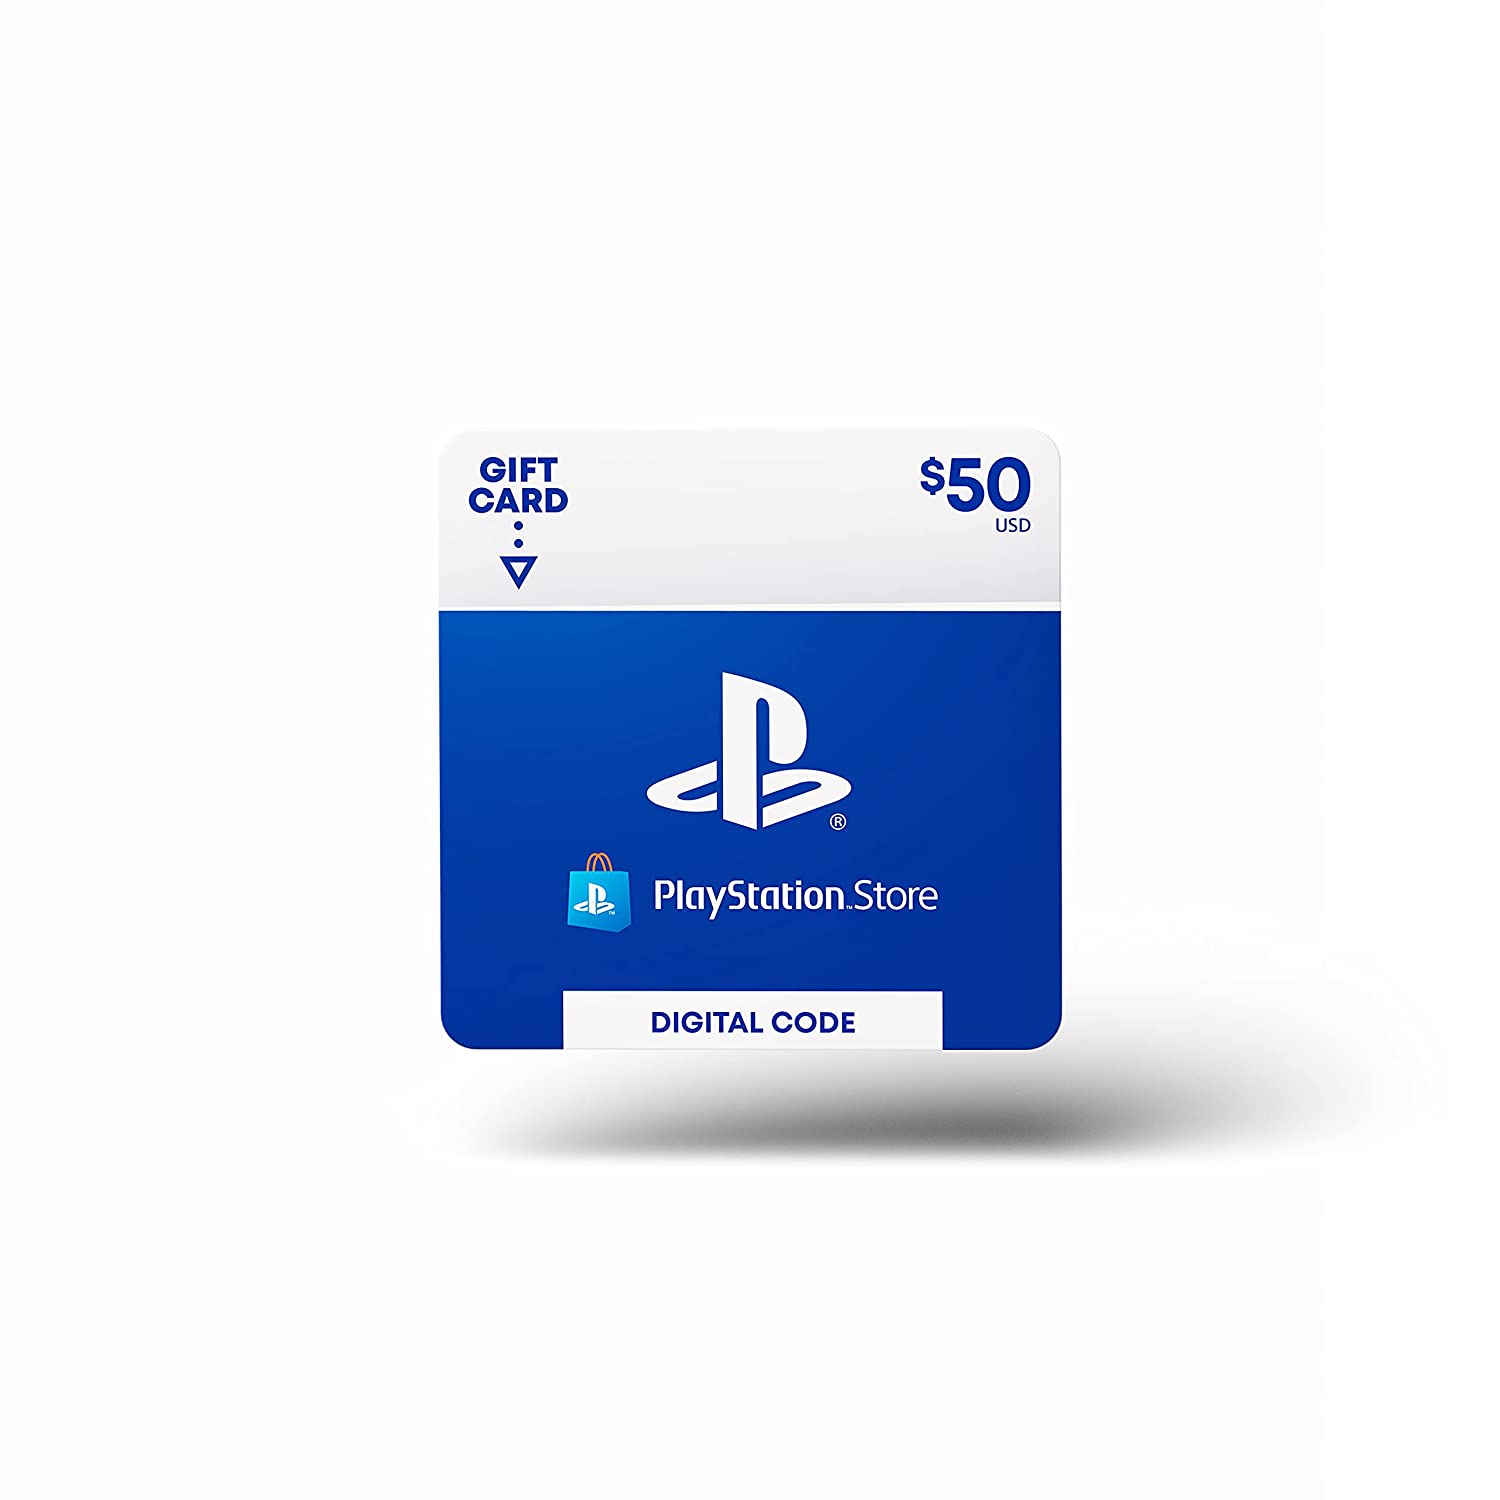 Cartões da PlayStation Store de 50,00 €